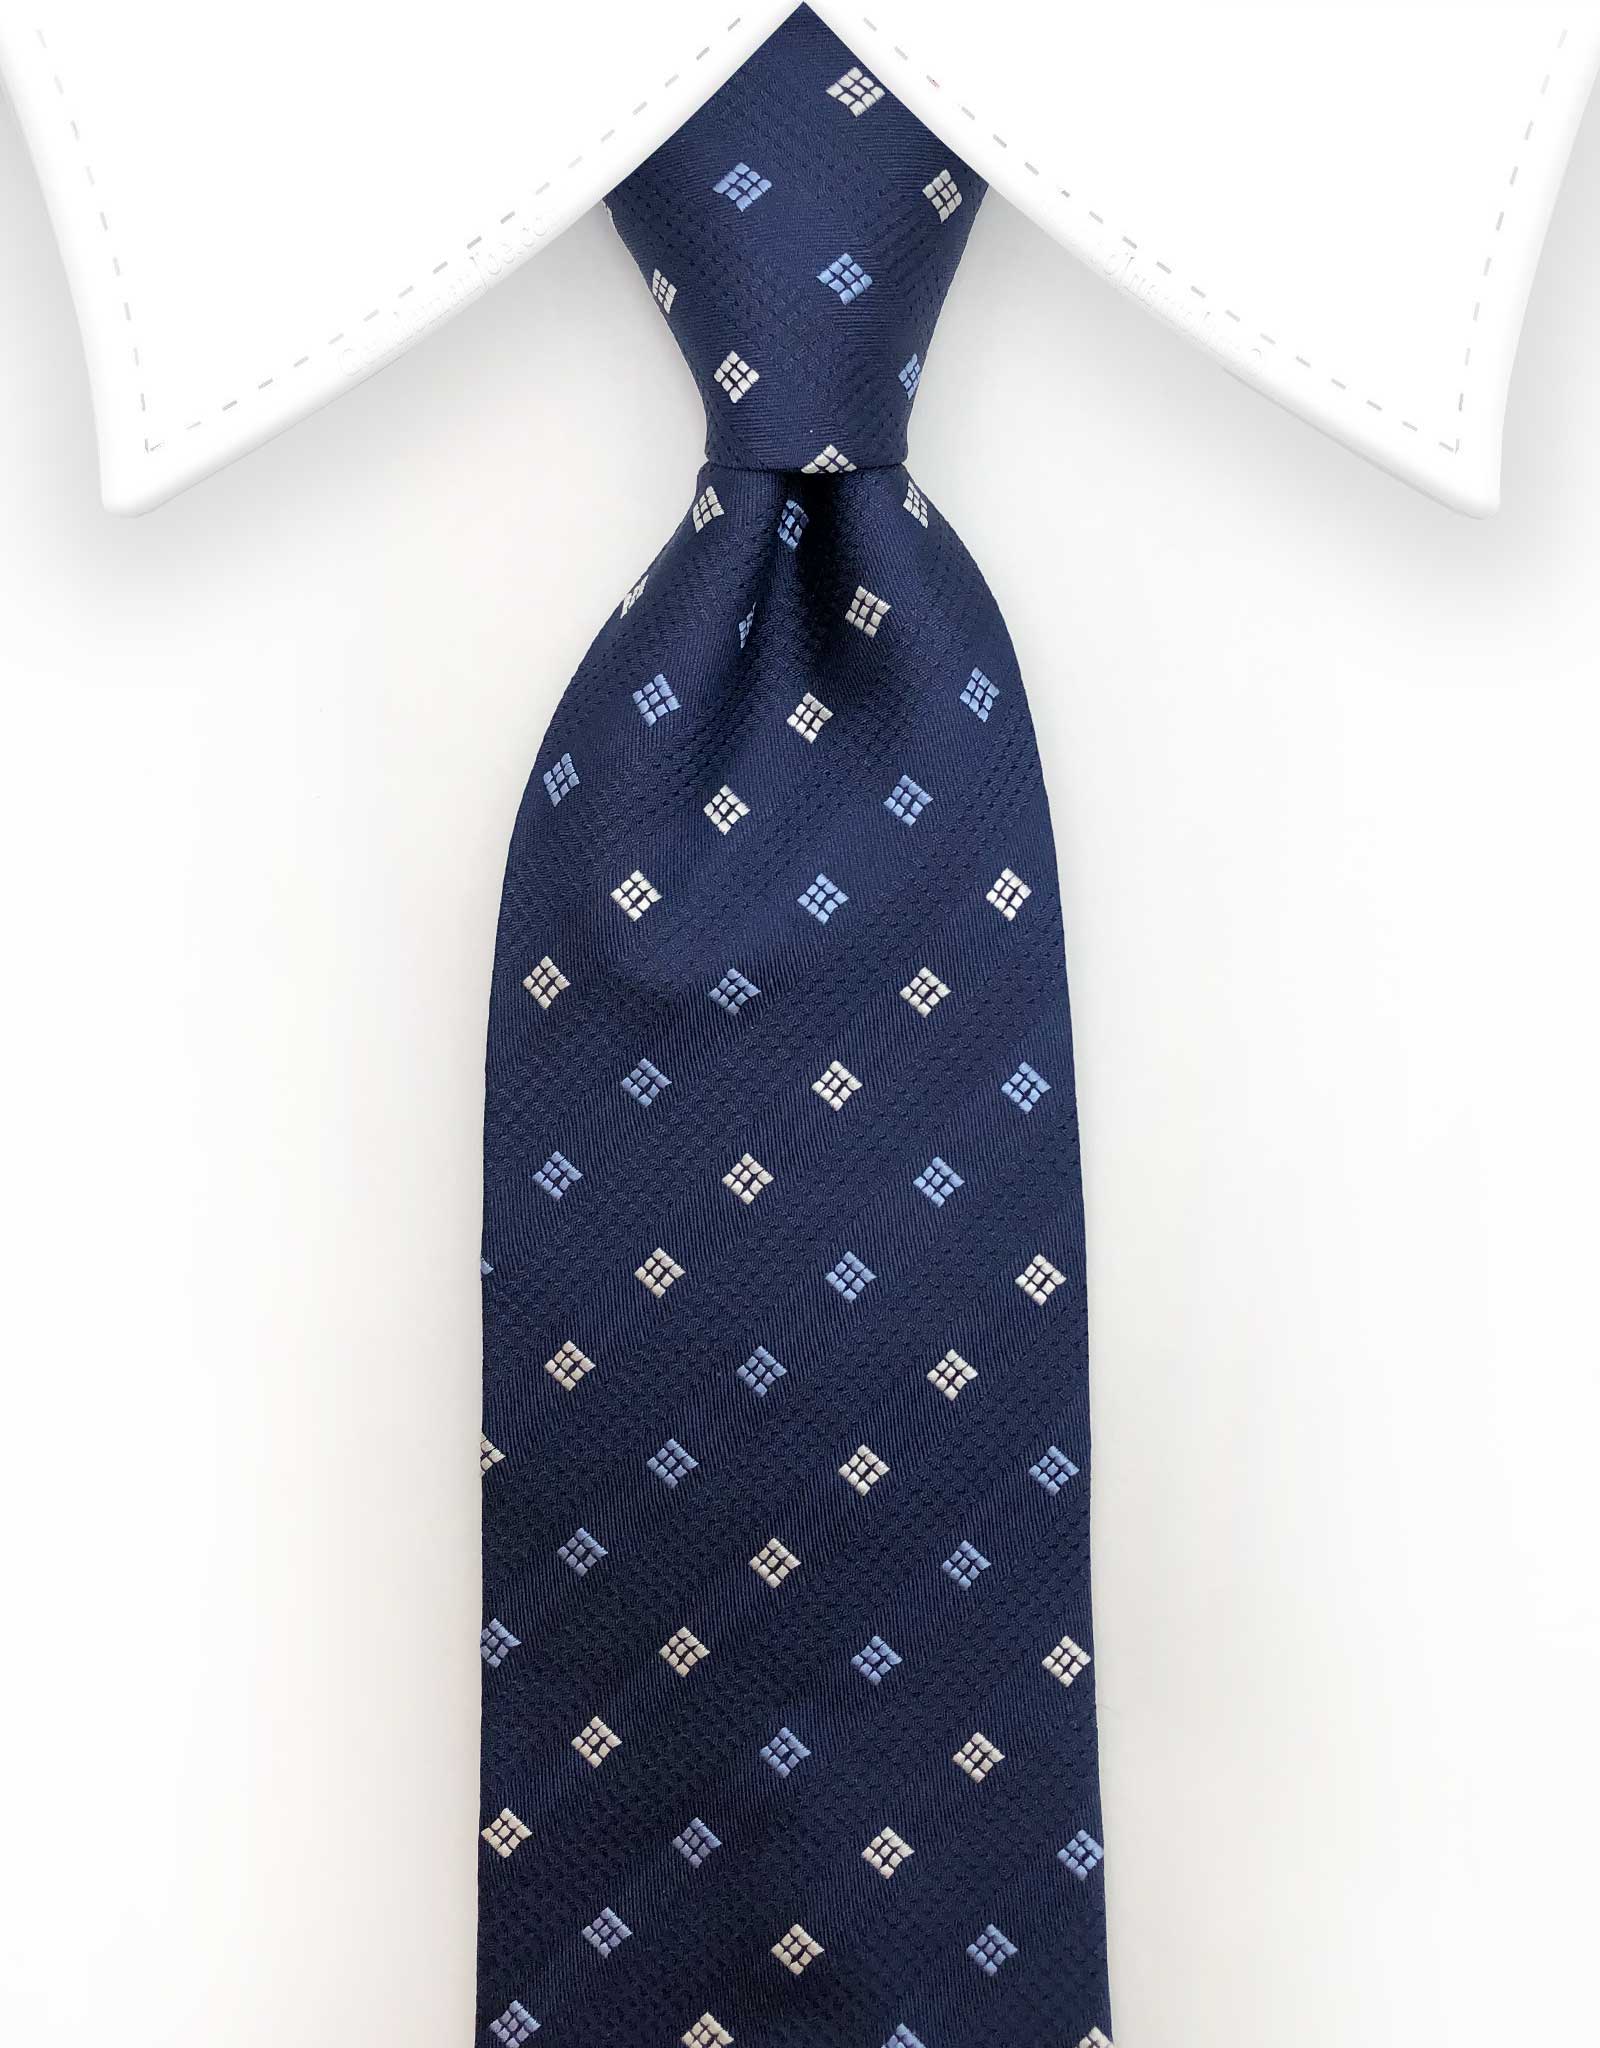 navy blue ties